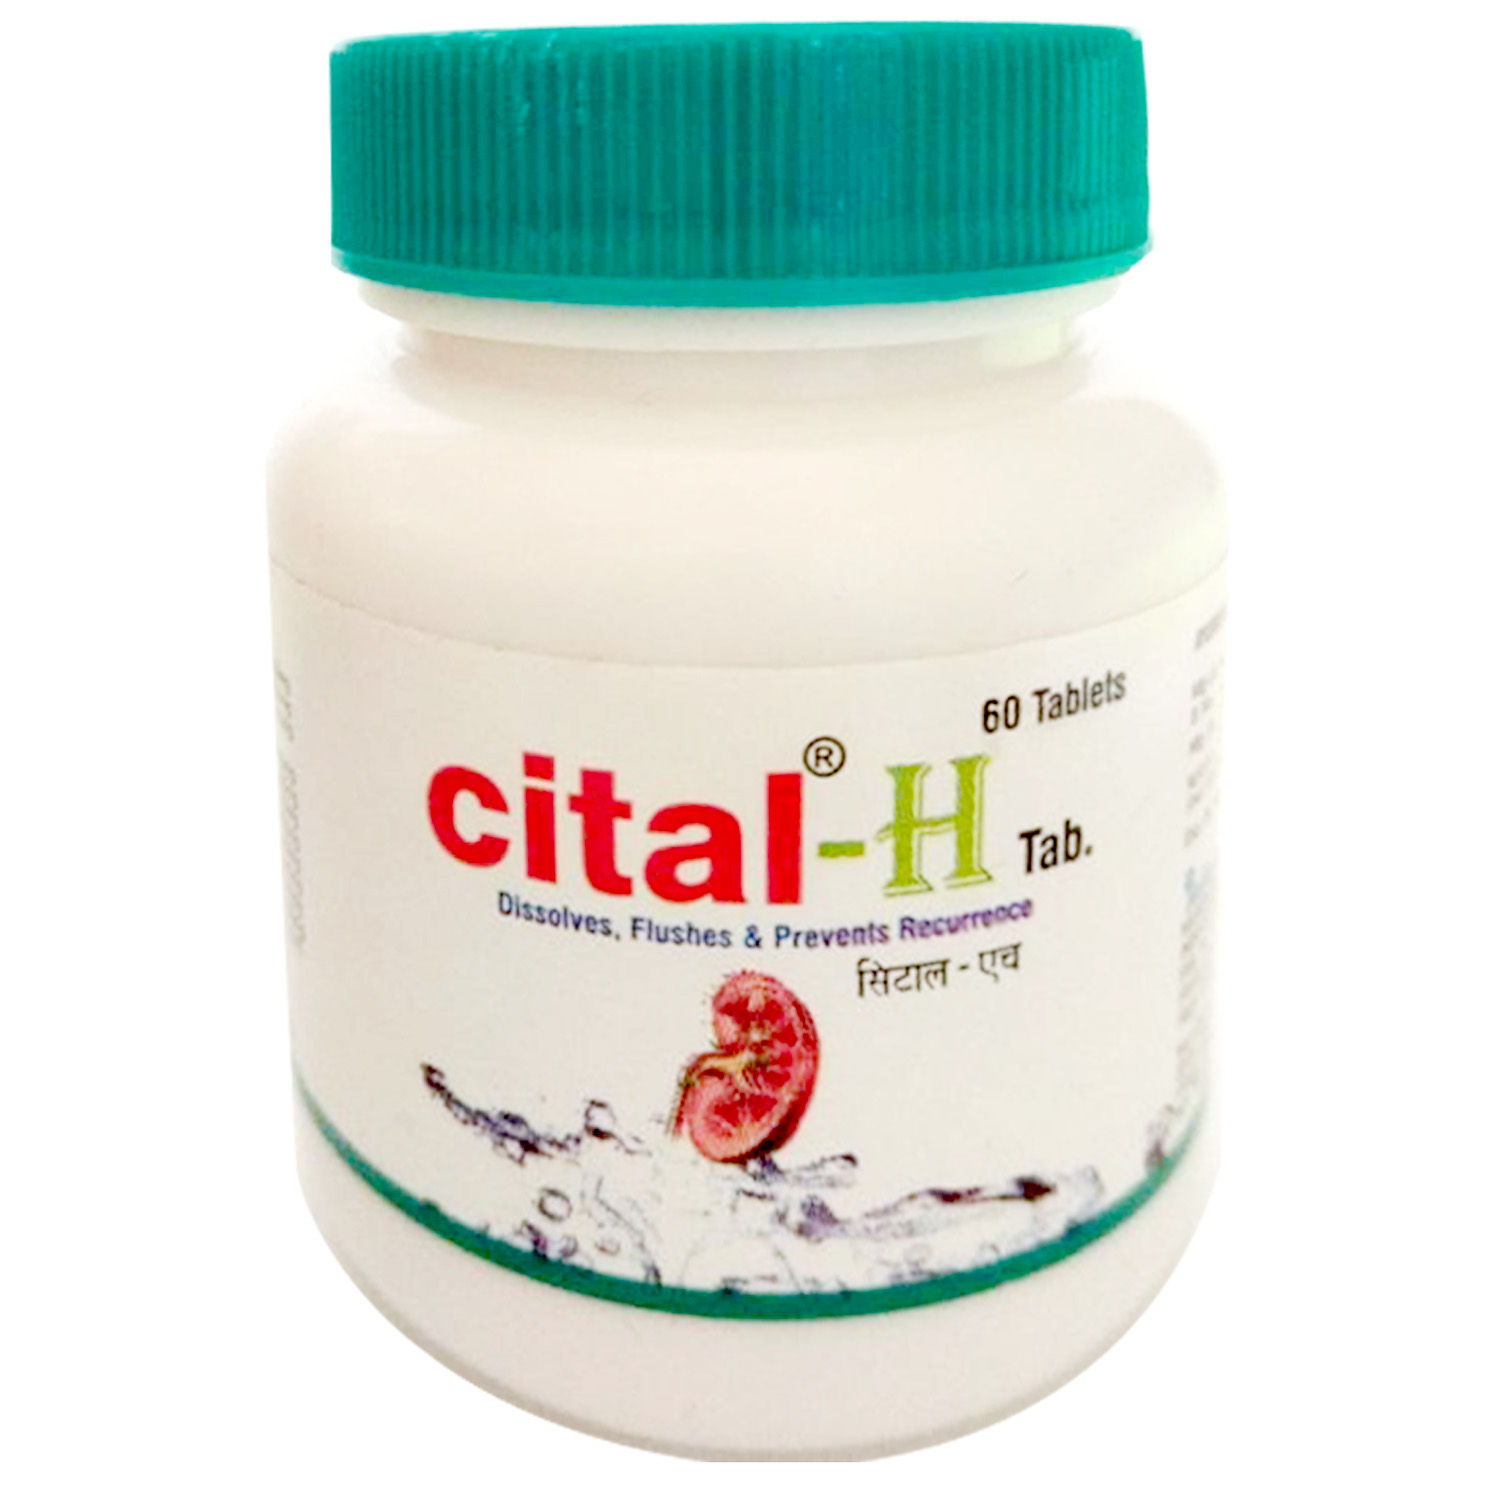 Buy Cital-H, 60 Tablets Online